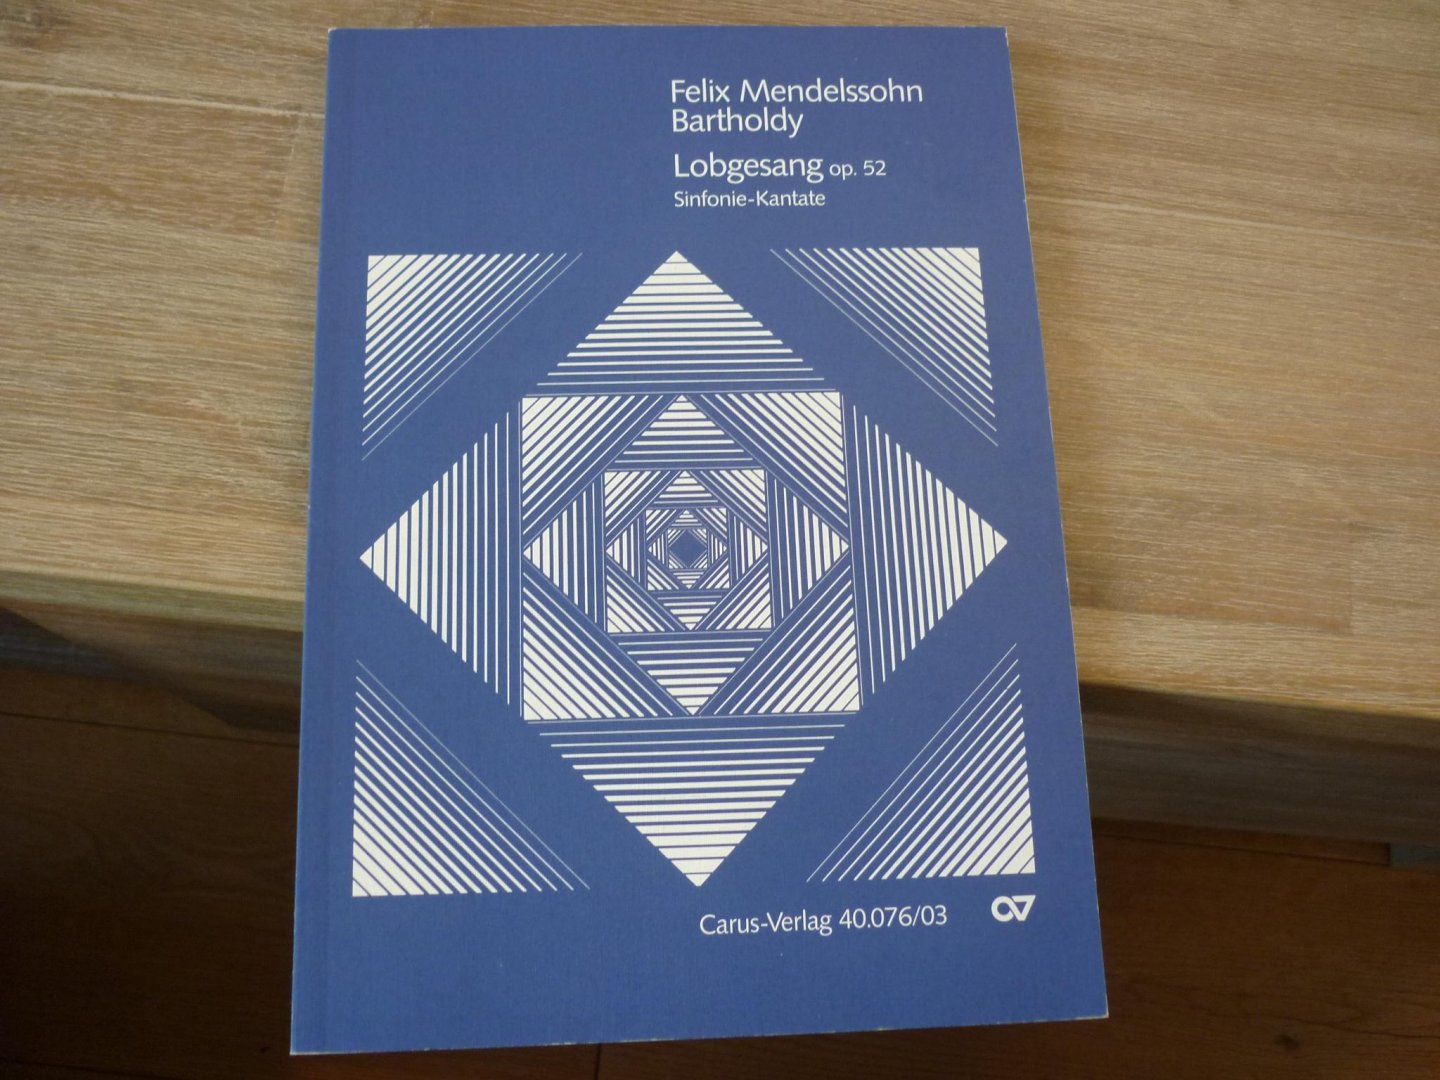 Mendelssohn-Bartholdy, Felix; (1809-1847) - Lobgesang Eine Symphonie-Kantate nach Worten der Heiligen Schrift; op.52; Klavierauszug der Kantate